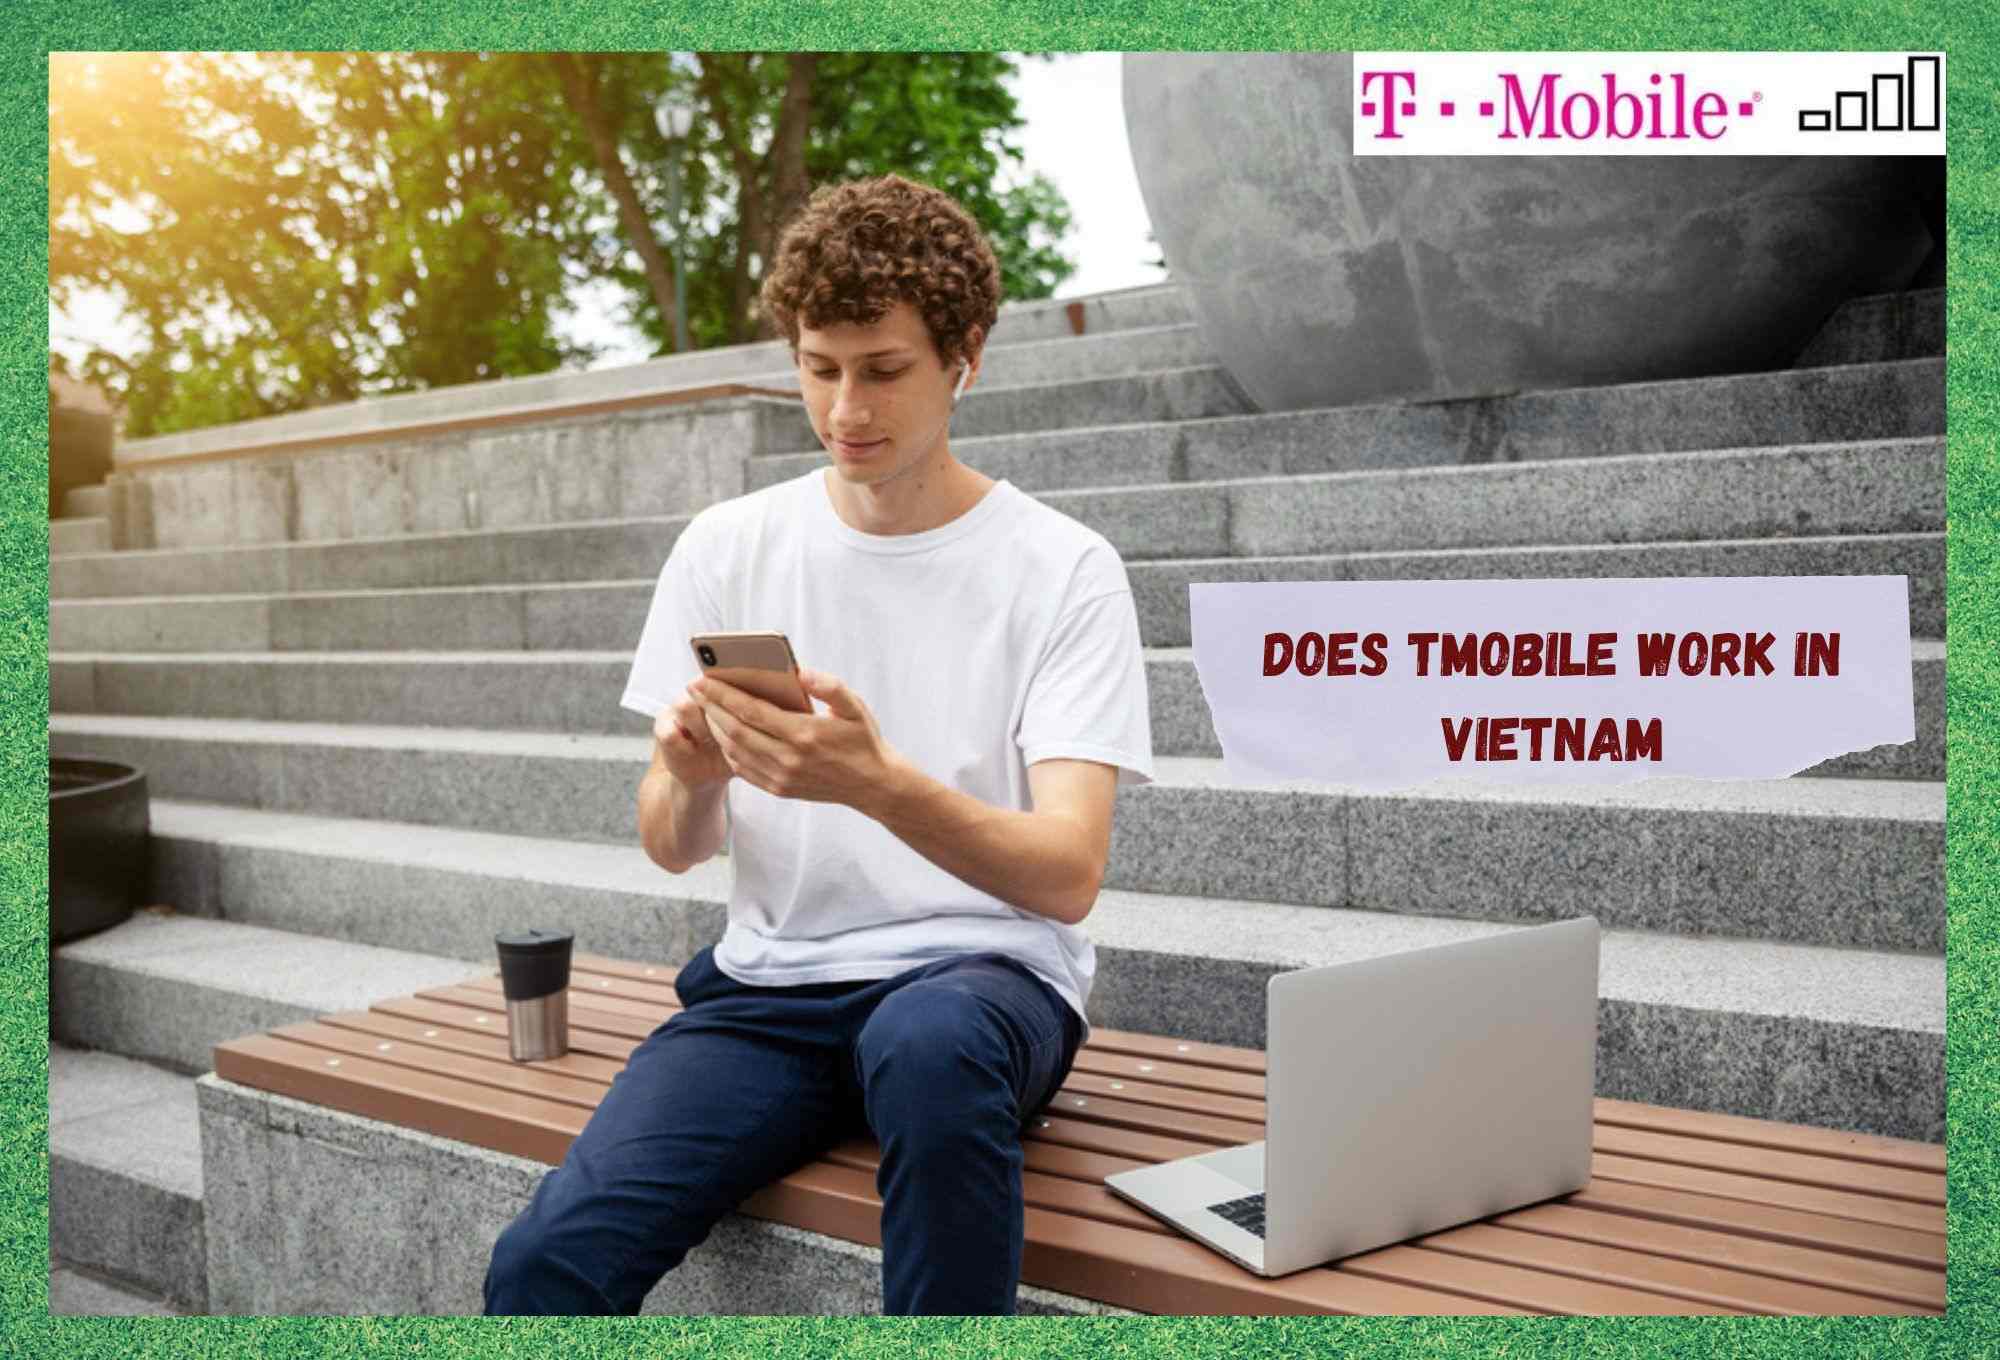 A bheil T-Mobile ag obair ann am Bhietnam? (Fhreagair)